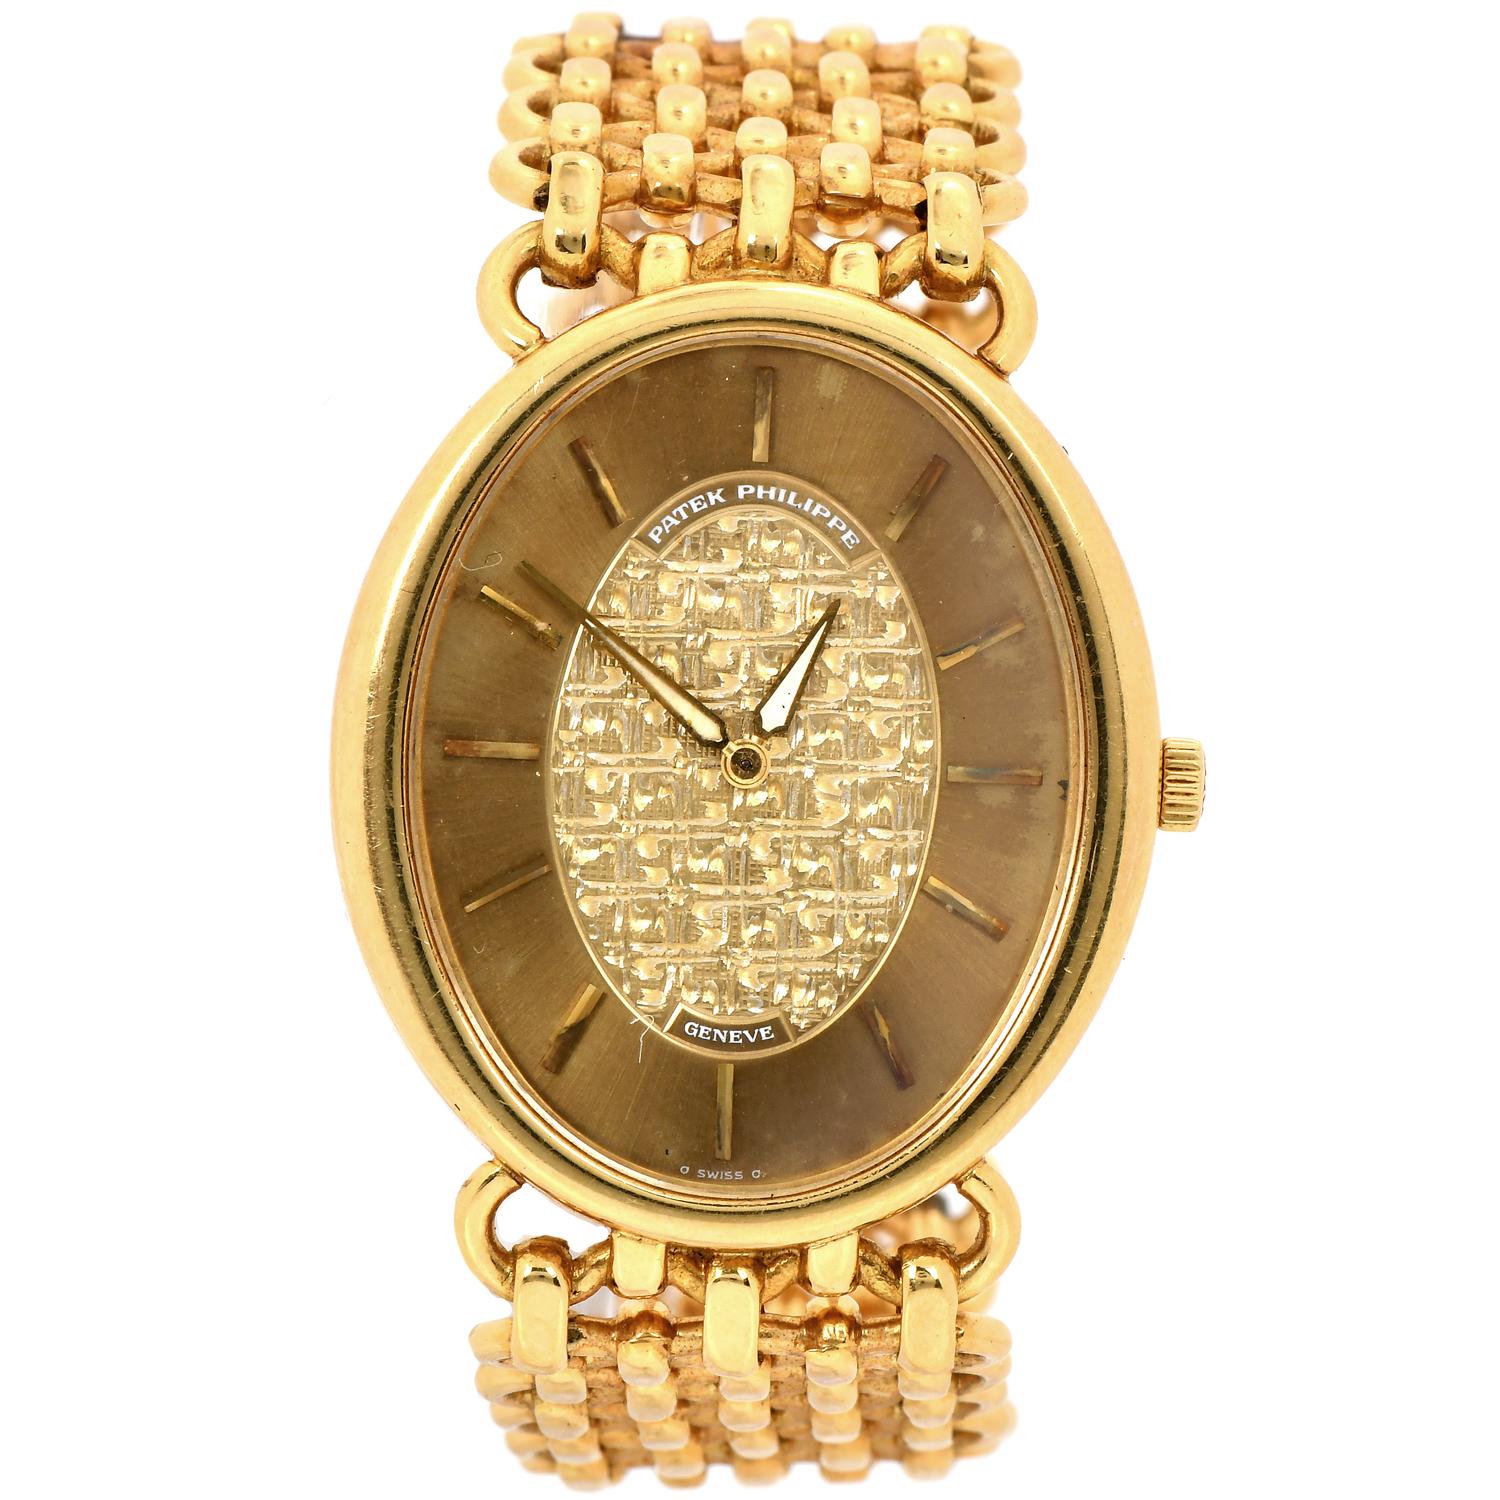 Cette montre Patek Philippe vintage est un véritable témoignage du savoir-faire exceptionnel et du design durable de la marque.

Le Design/One, avec sa forme ovale caractéristique, ajoute une touche d'élégance et de sophistication à ce garde-temps